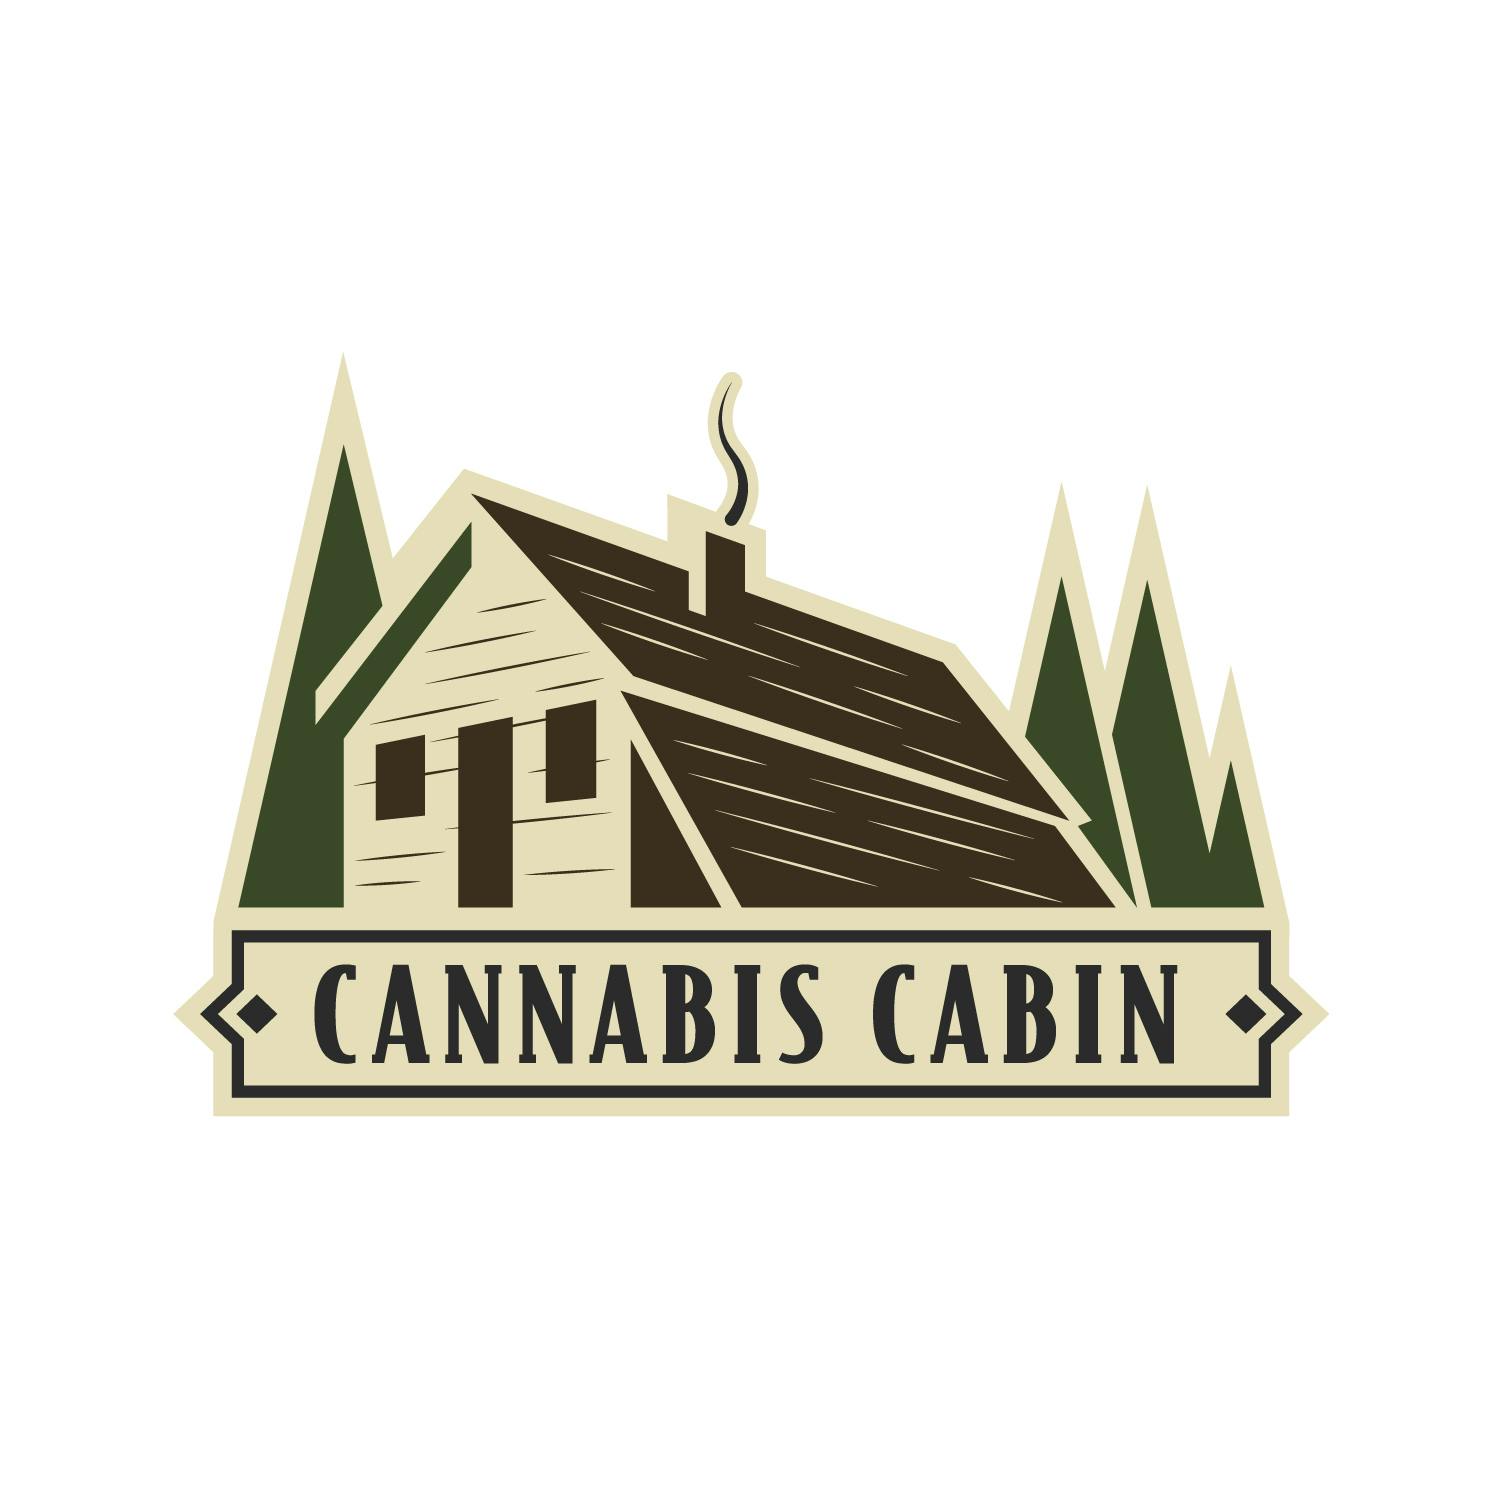 The Cannabis Cabin